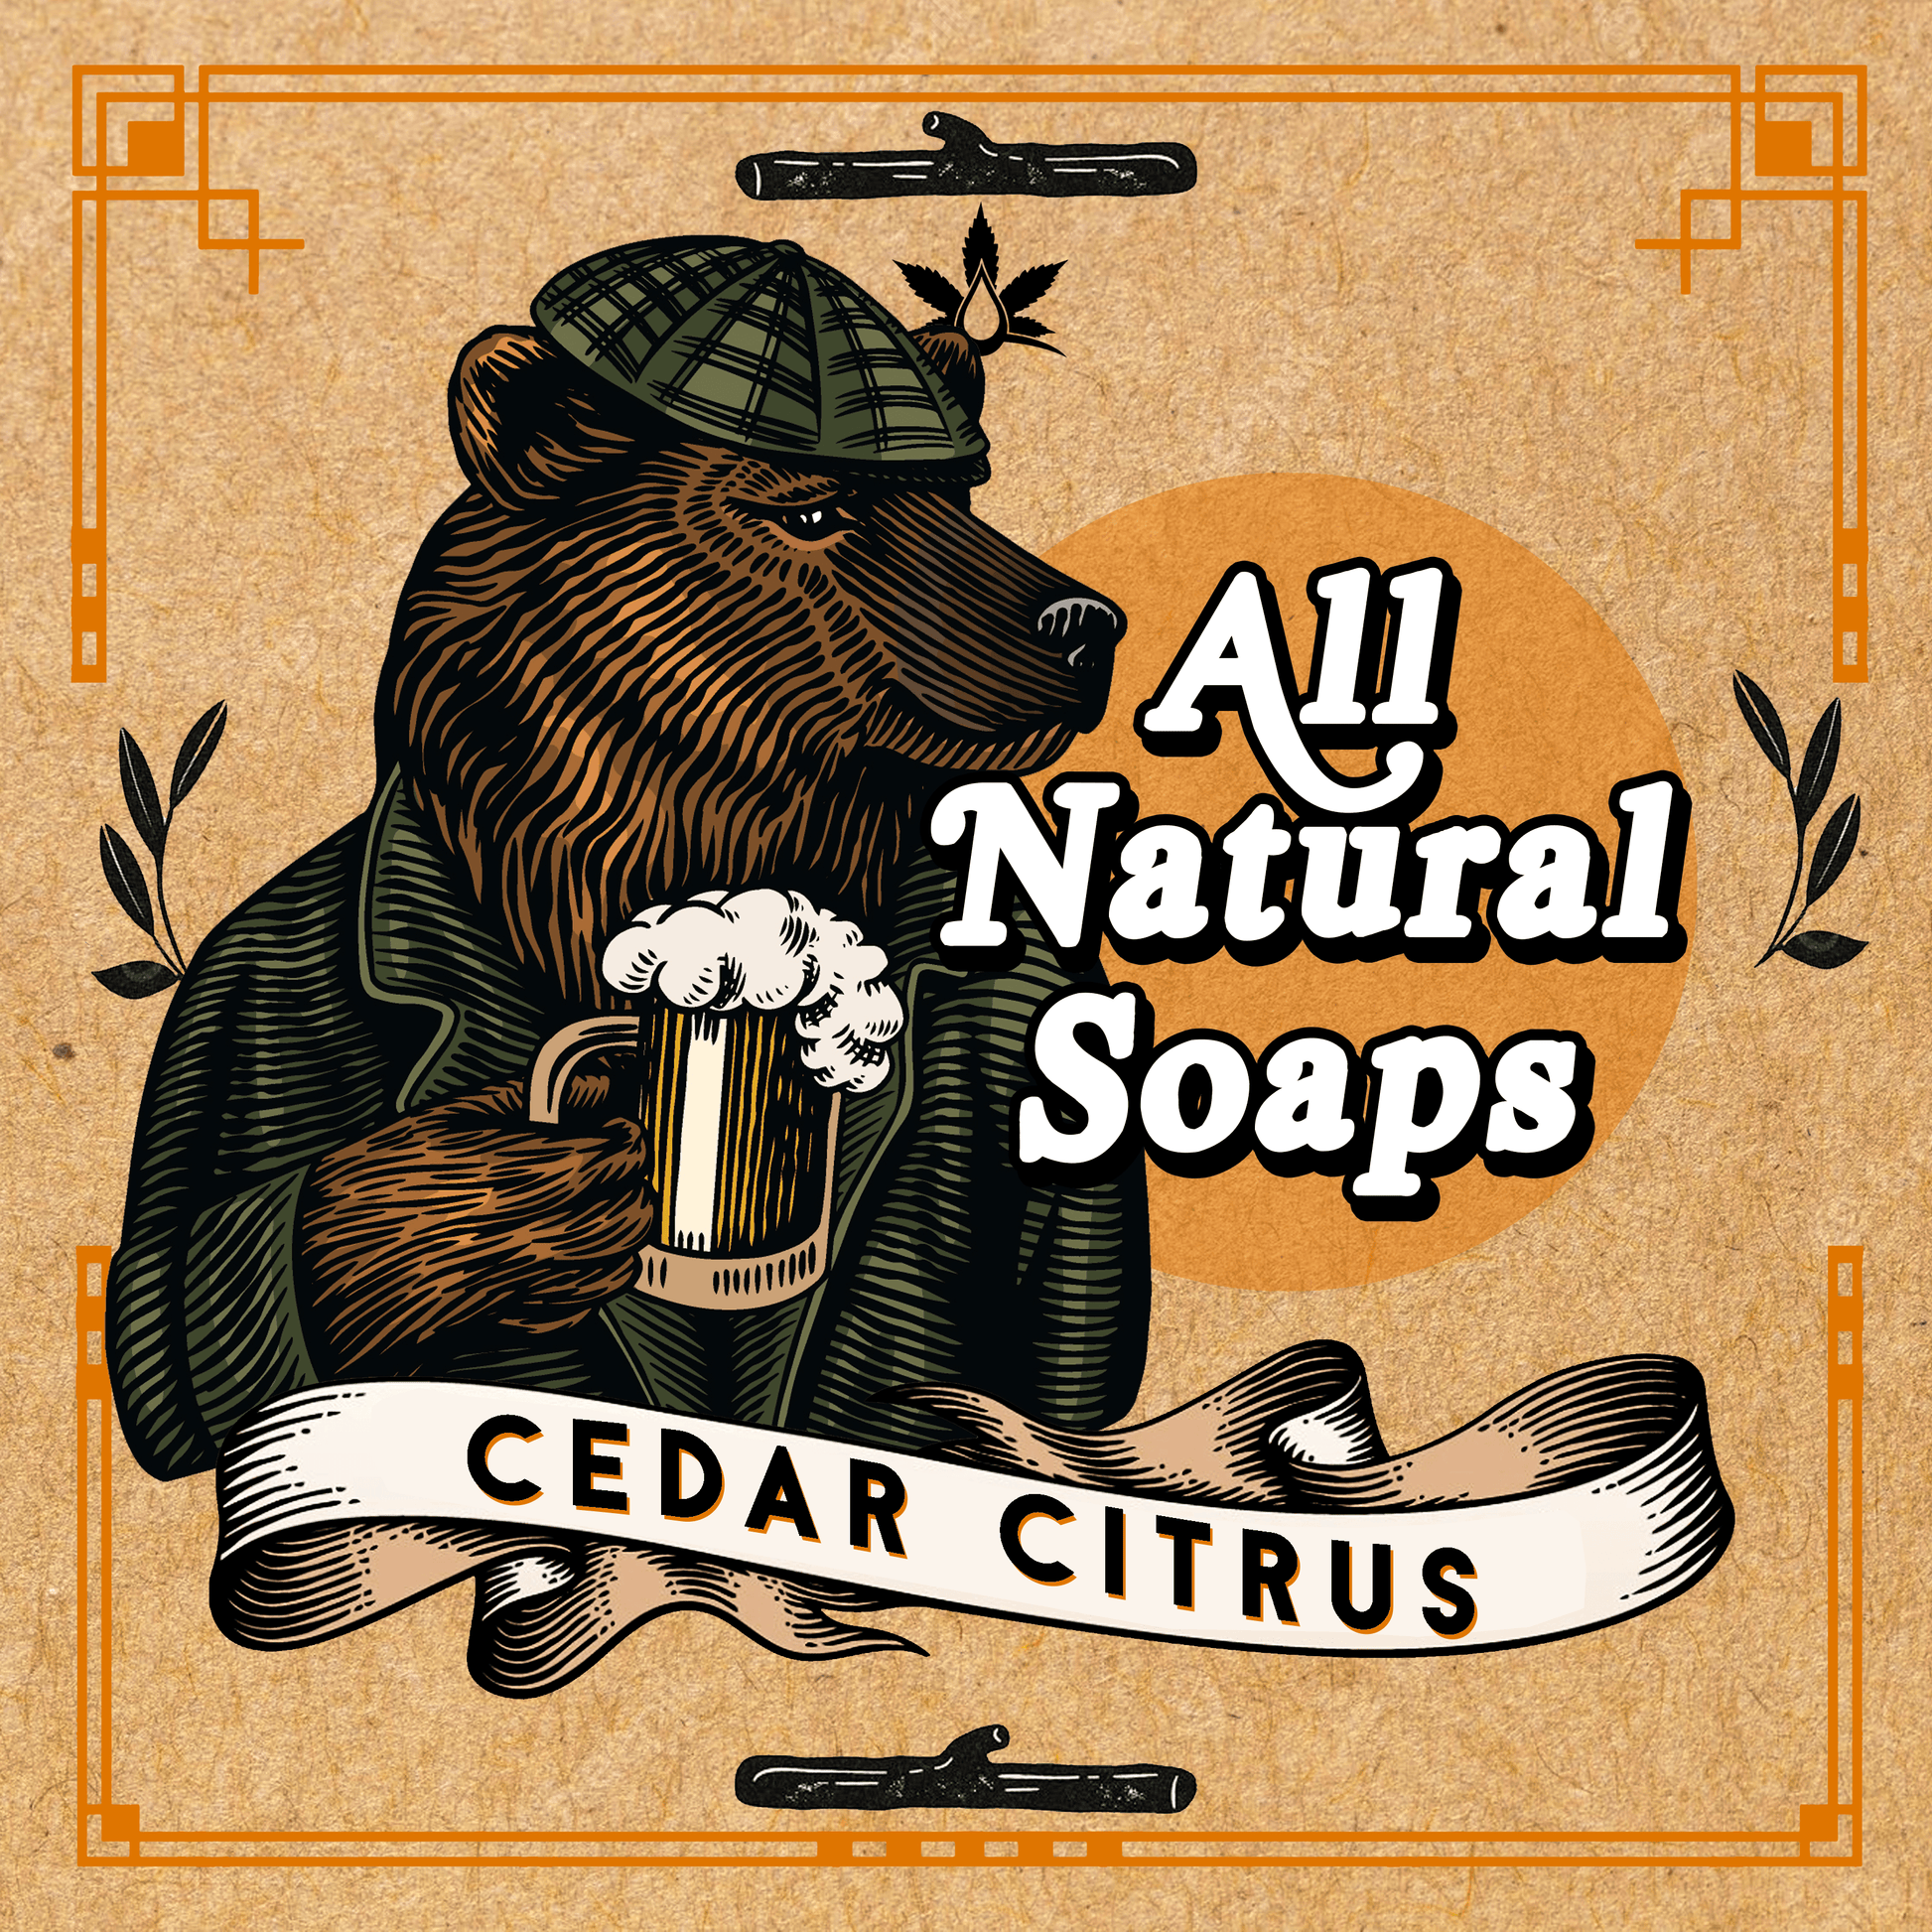 Natural Soap - Cedar Citrus - All Natural Soaps